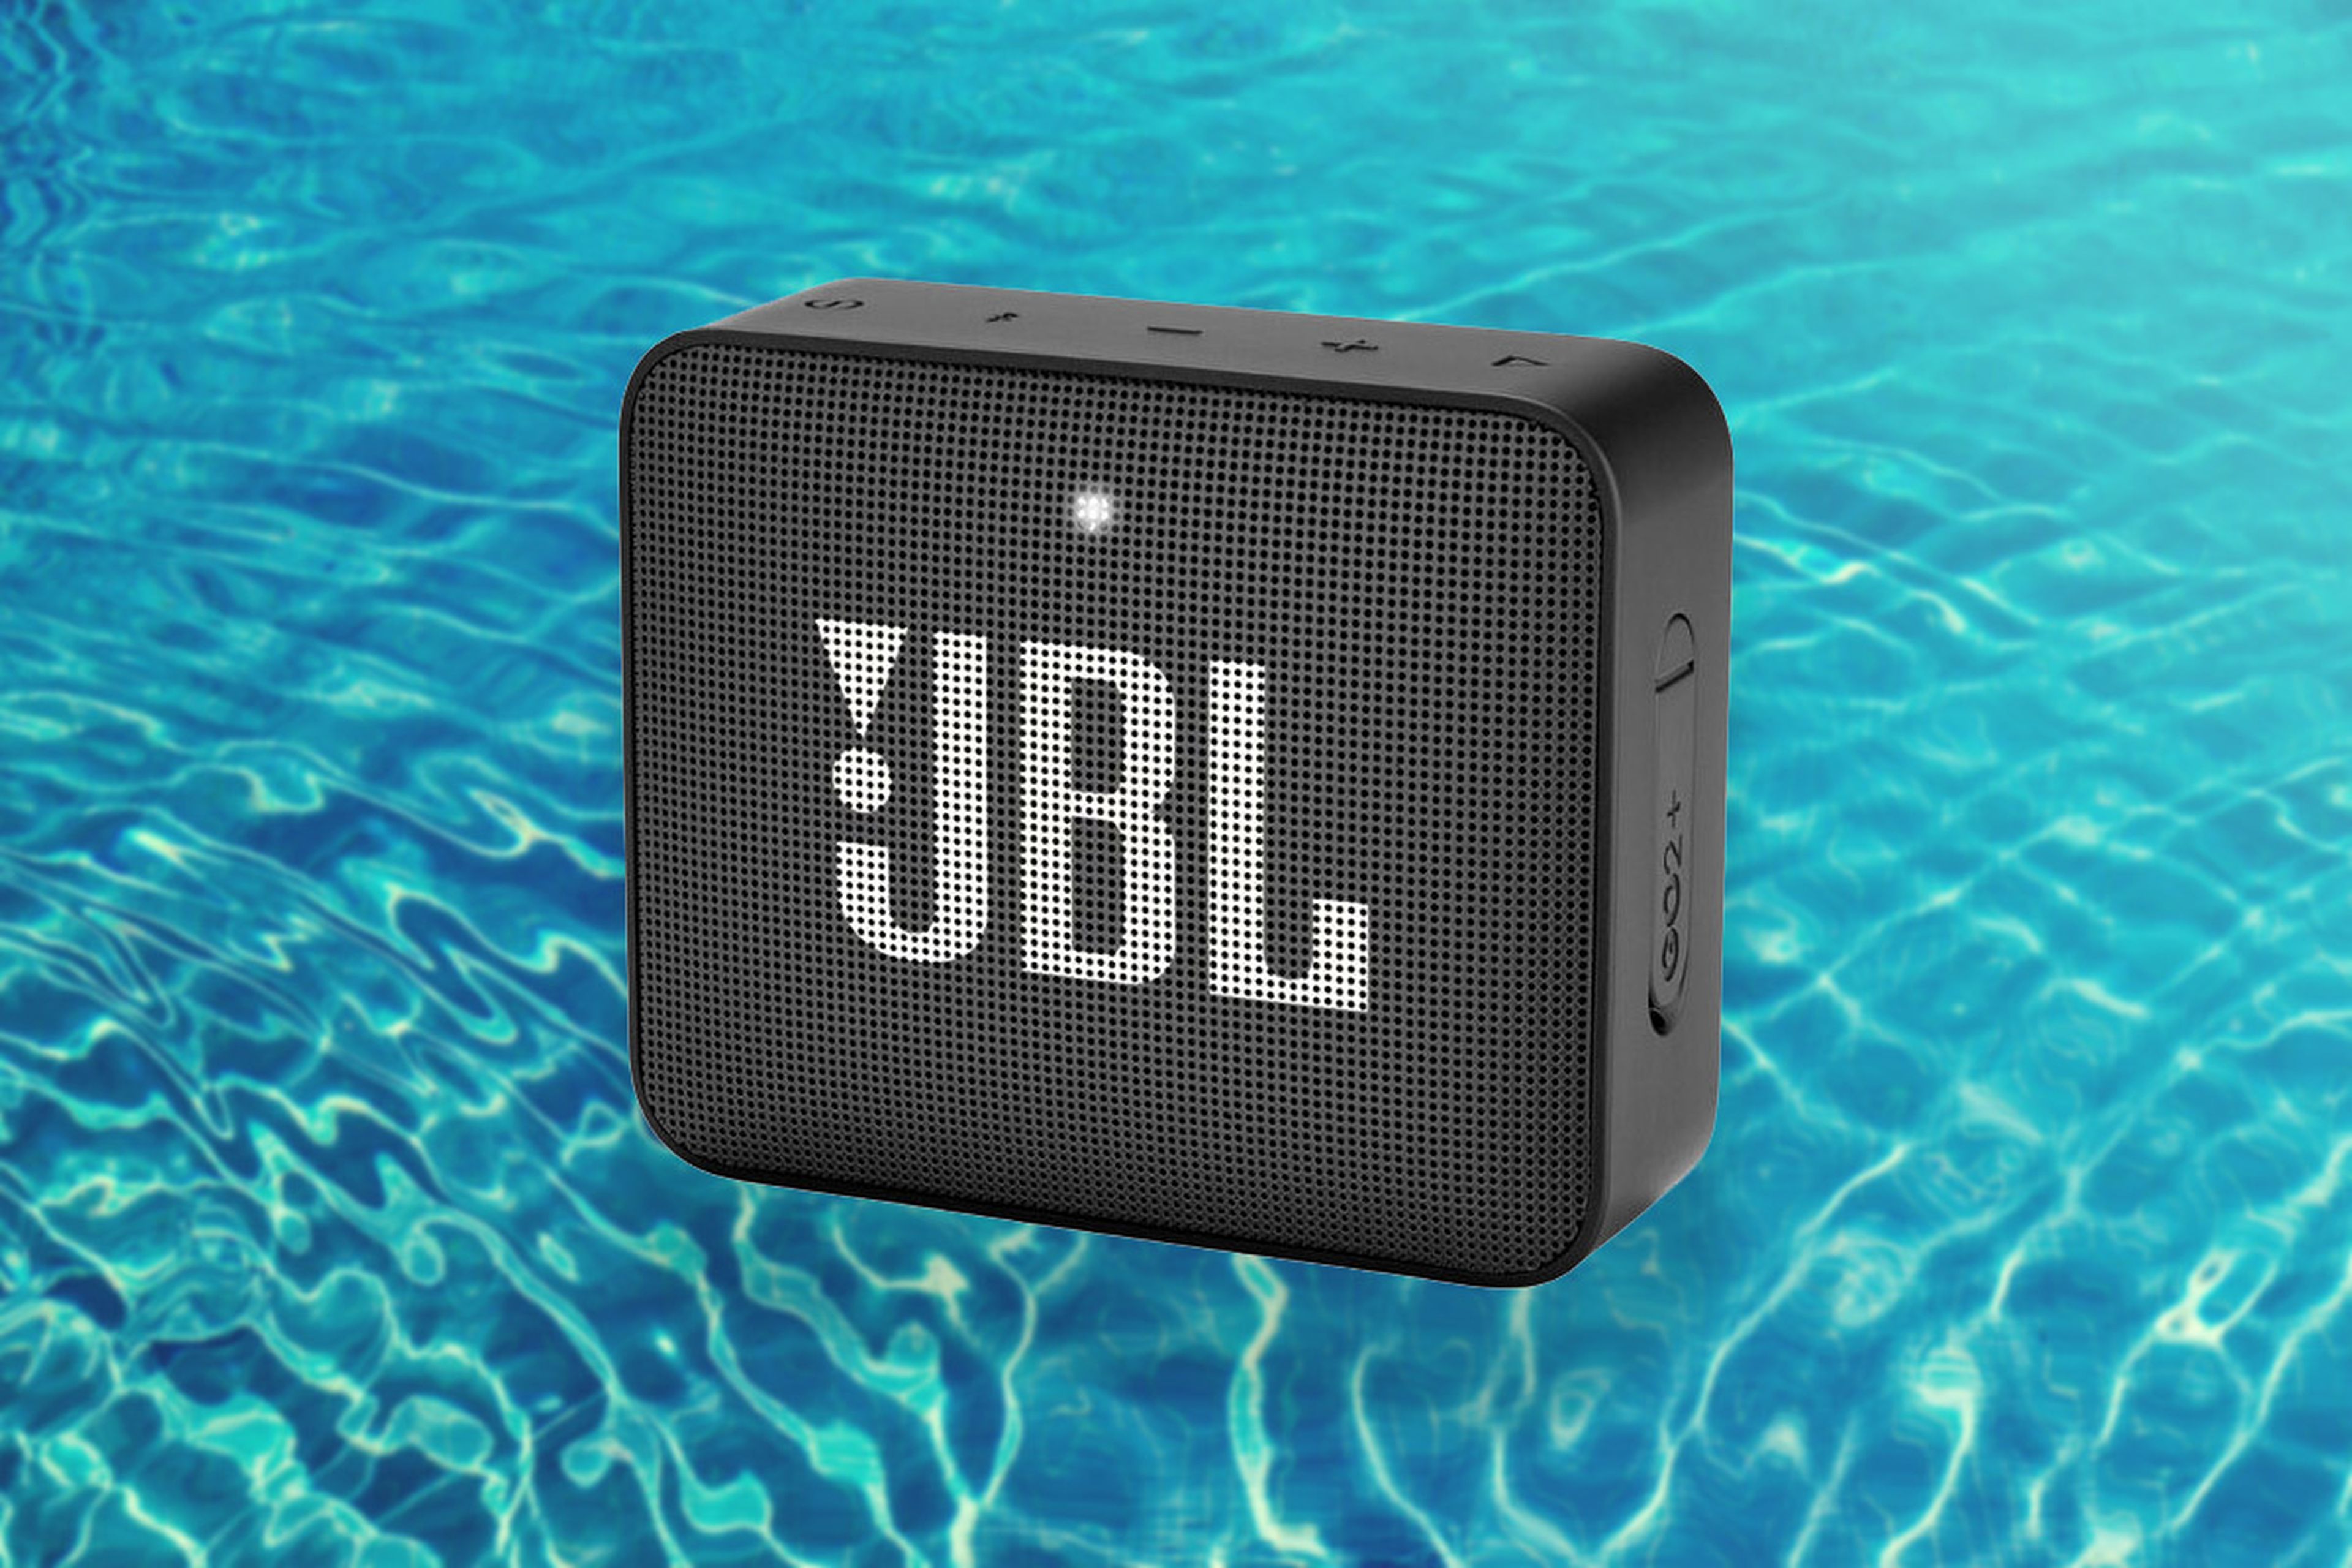 Sube el volumen con este altavoz Bluetooth JBL GO2+ por solo 24